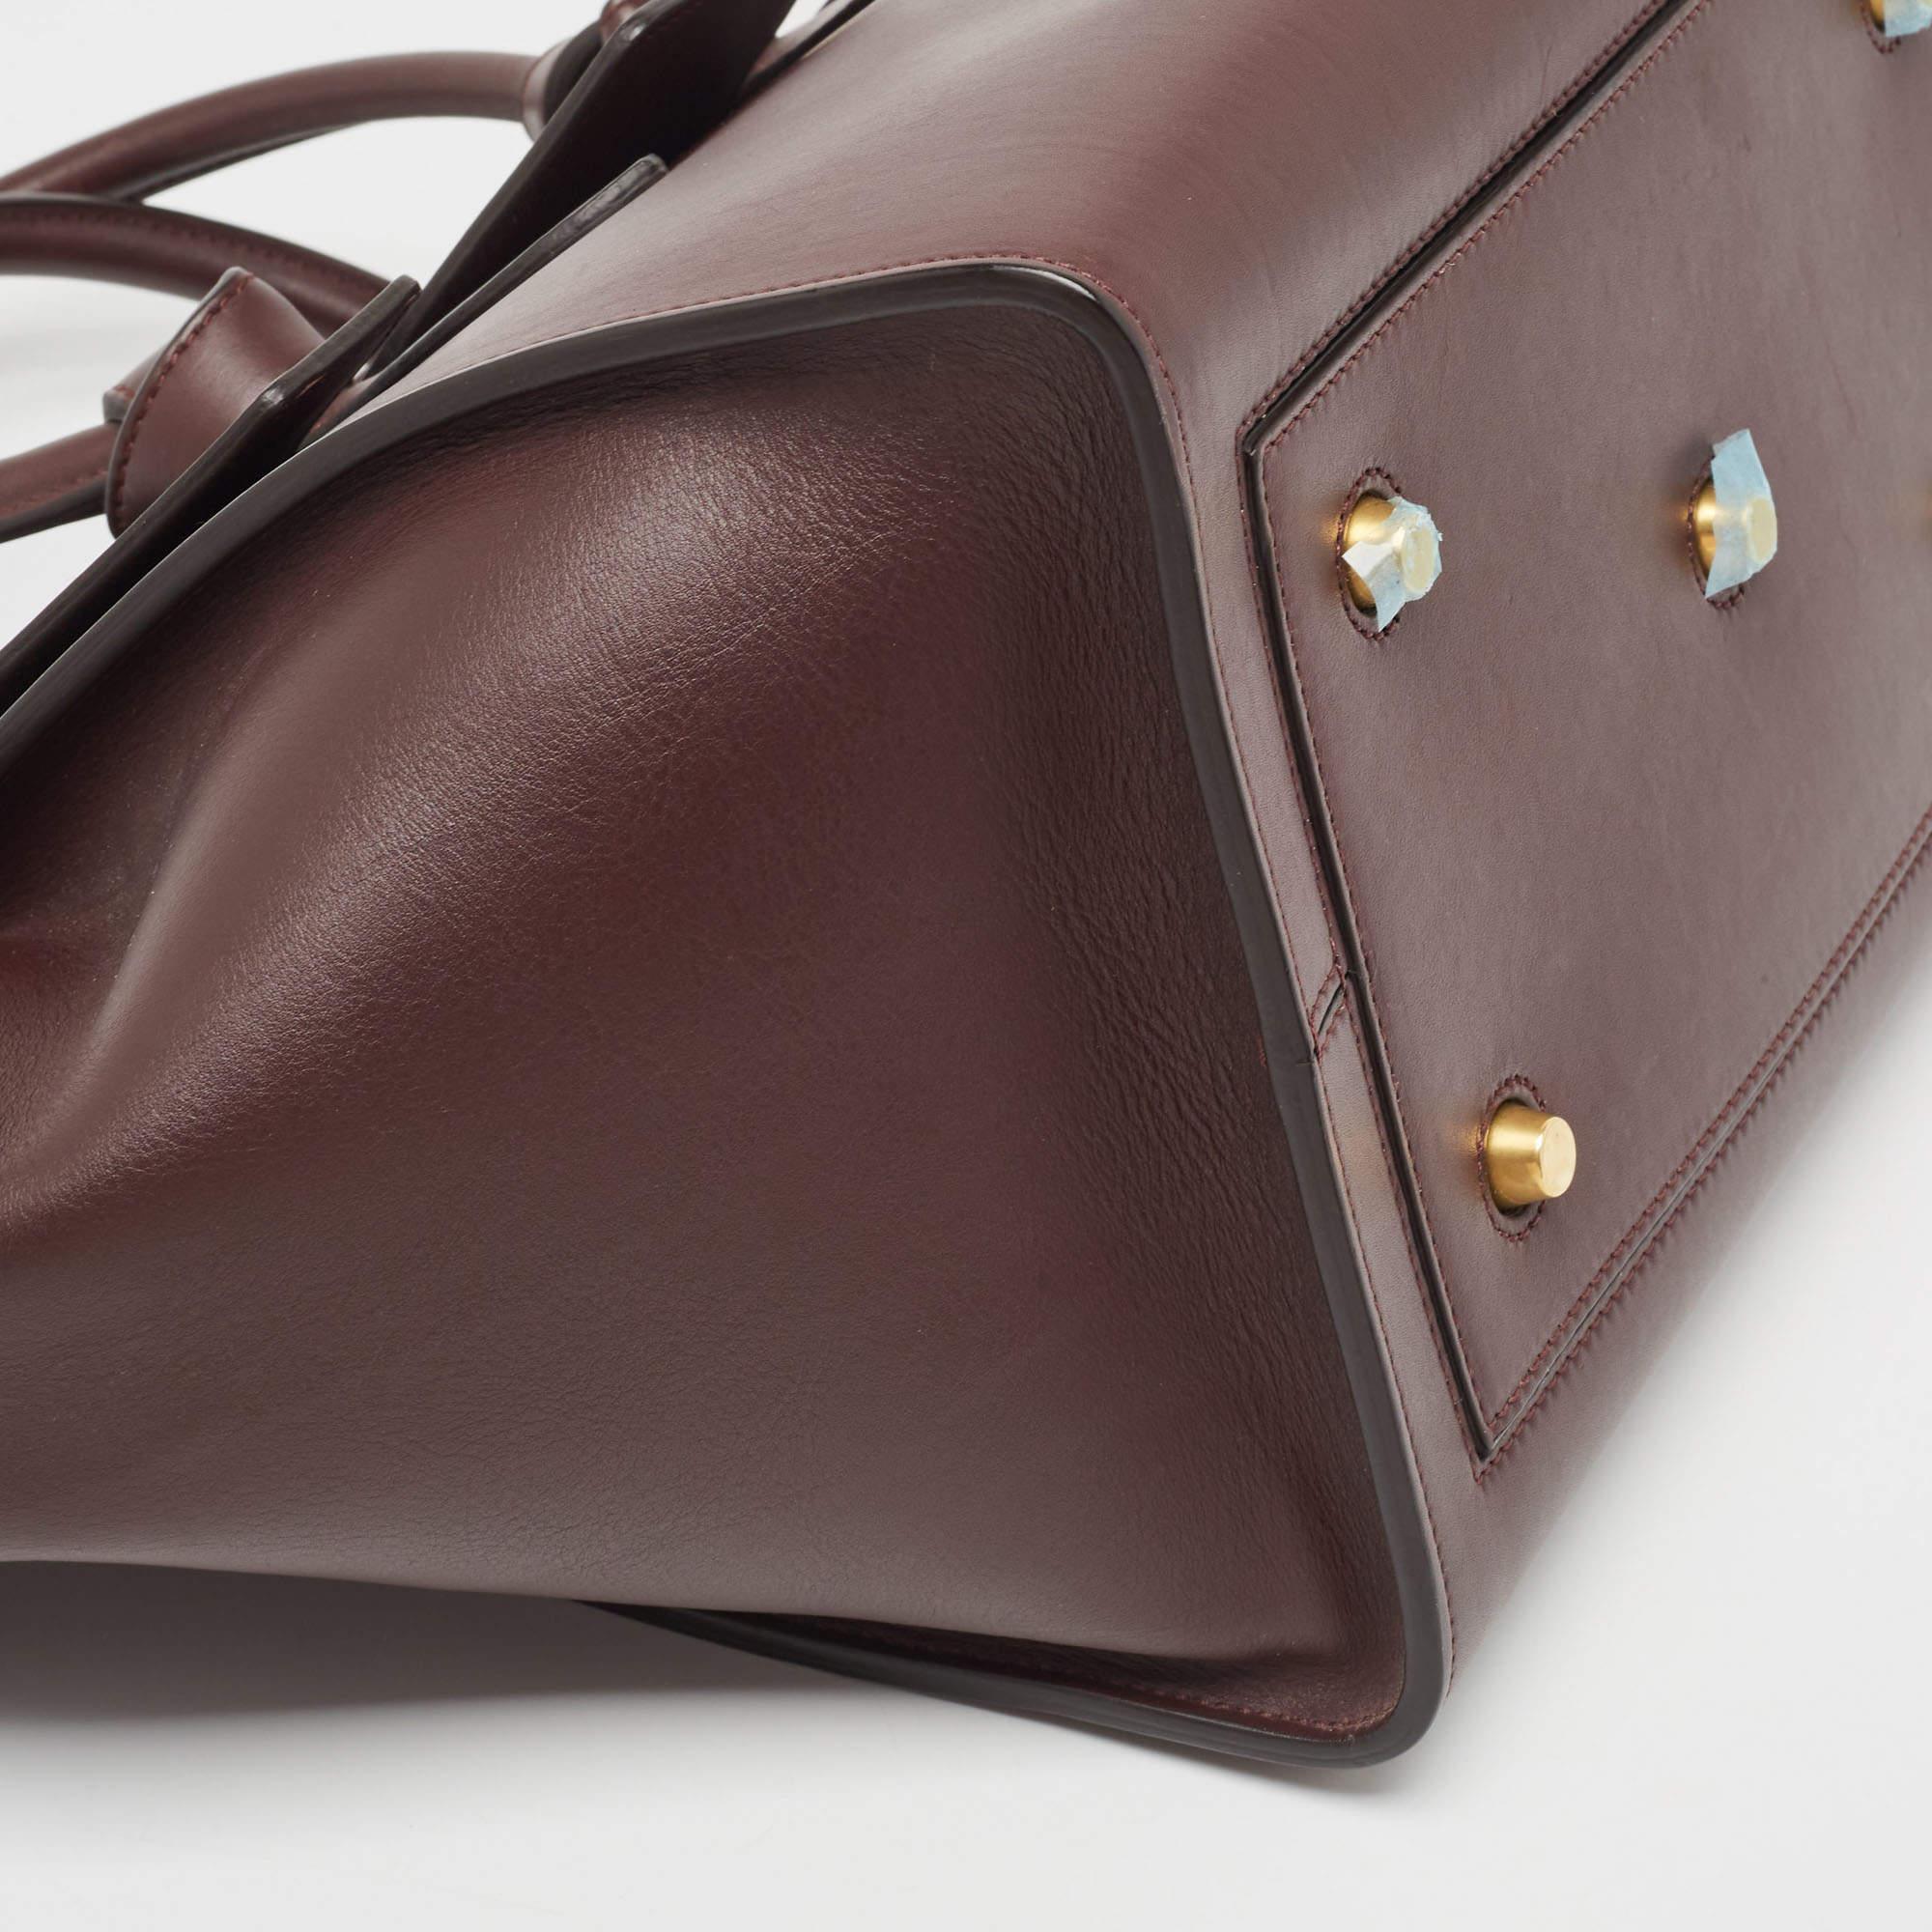 Celine Burgundy Leather Small Tie Tote In Good Condition For Sale In Dubai, Al Qouz 2